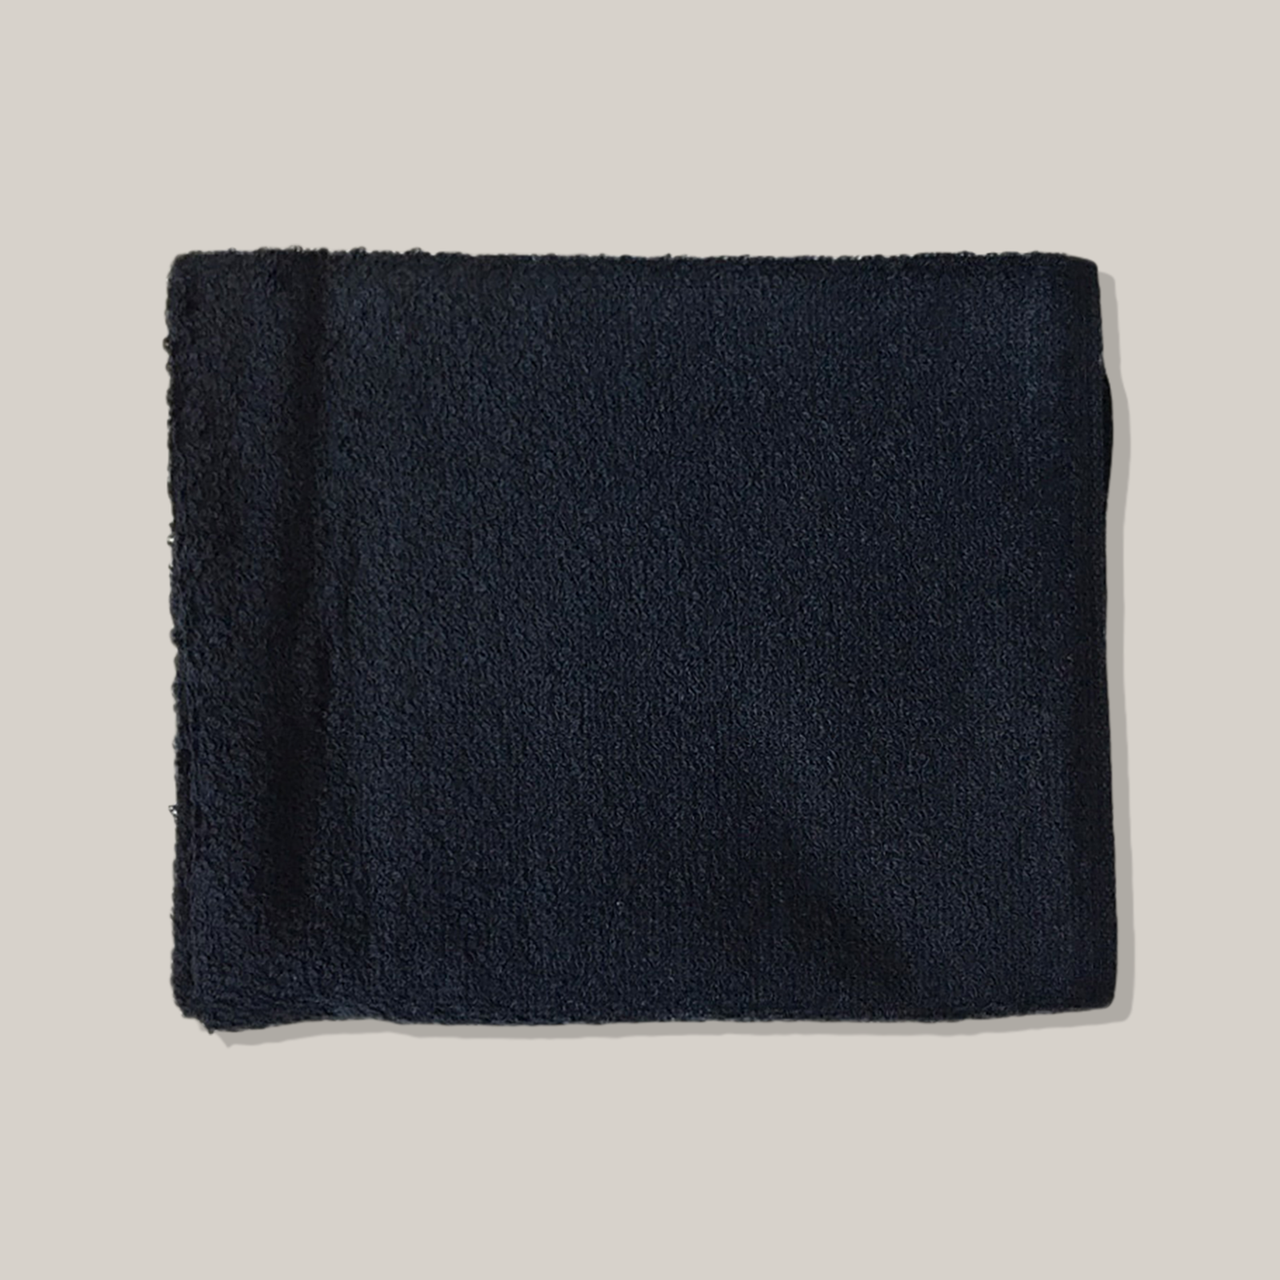 Dannyco (12/pk) Black Cotton Towels Stain Resistant 